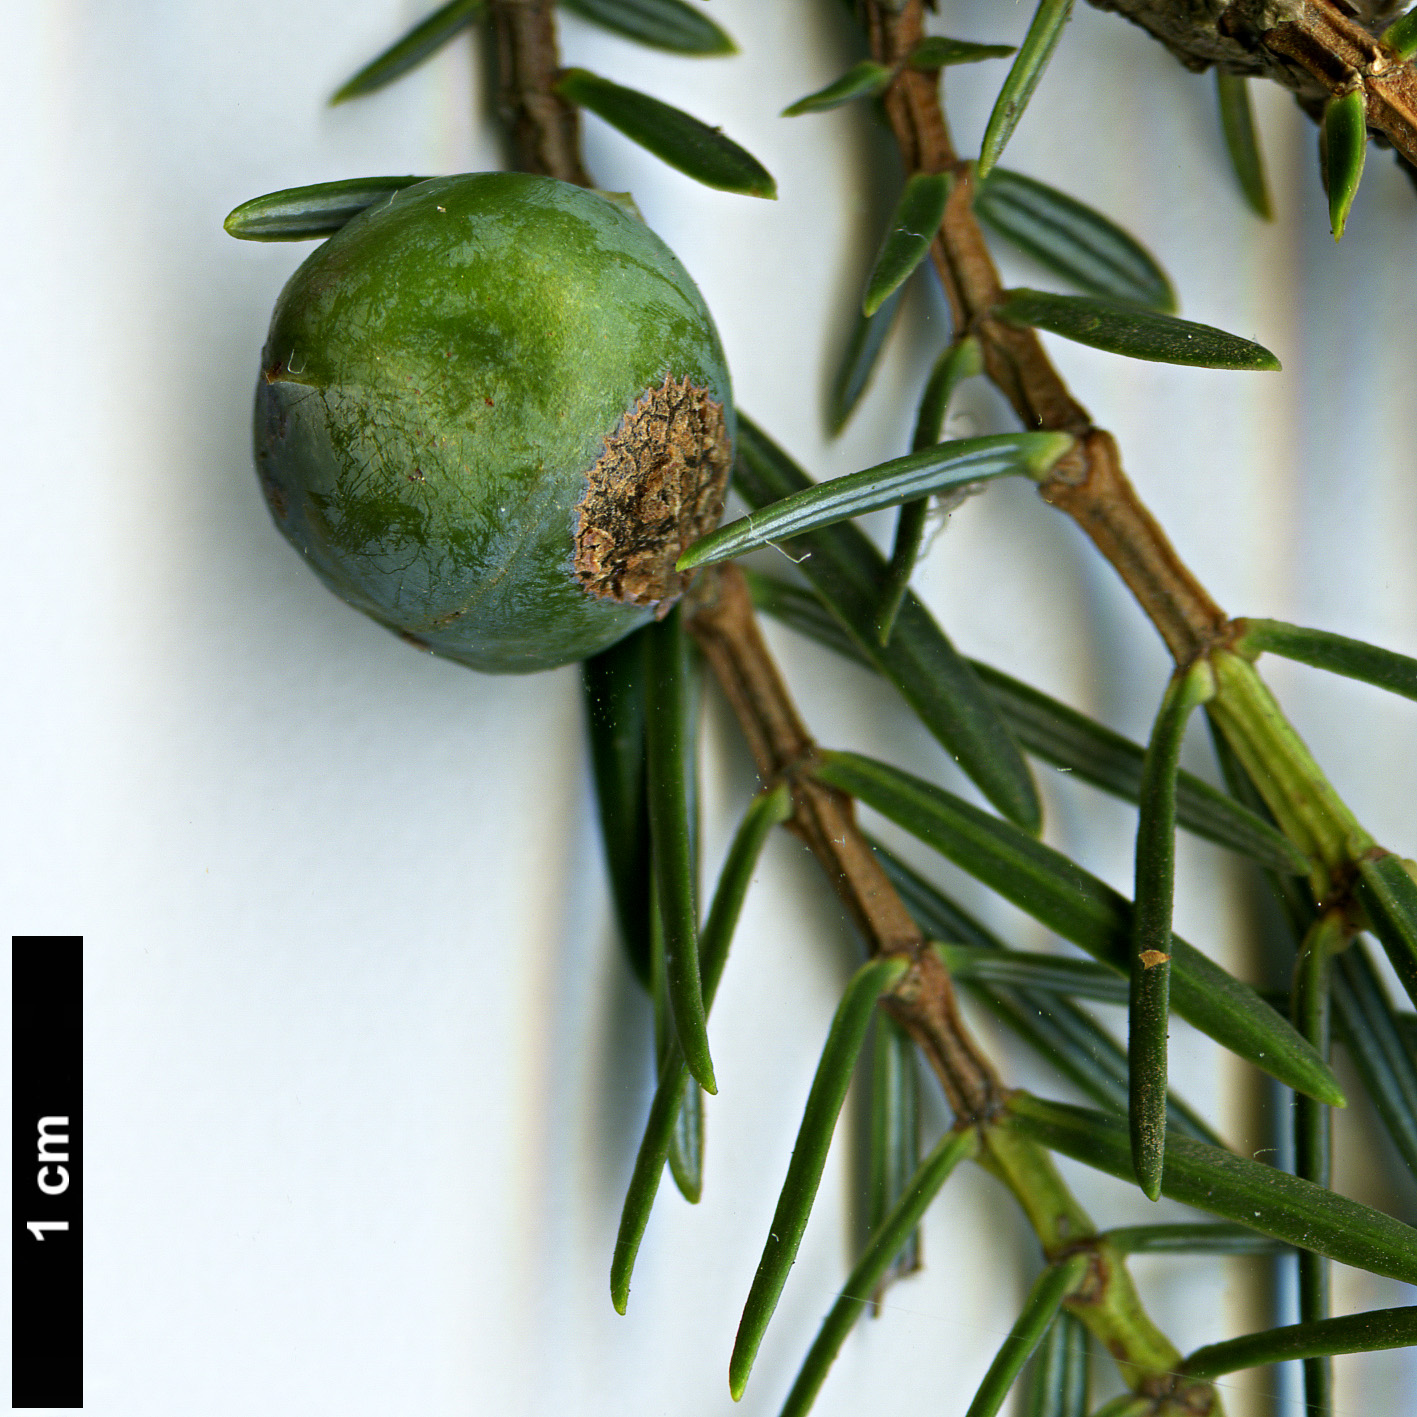 High resolution image: Family: Cupressaceae - Genus: Juniperus - Taxon: cedrus